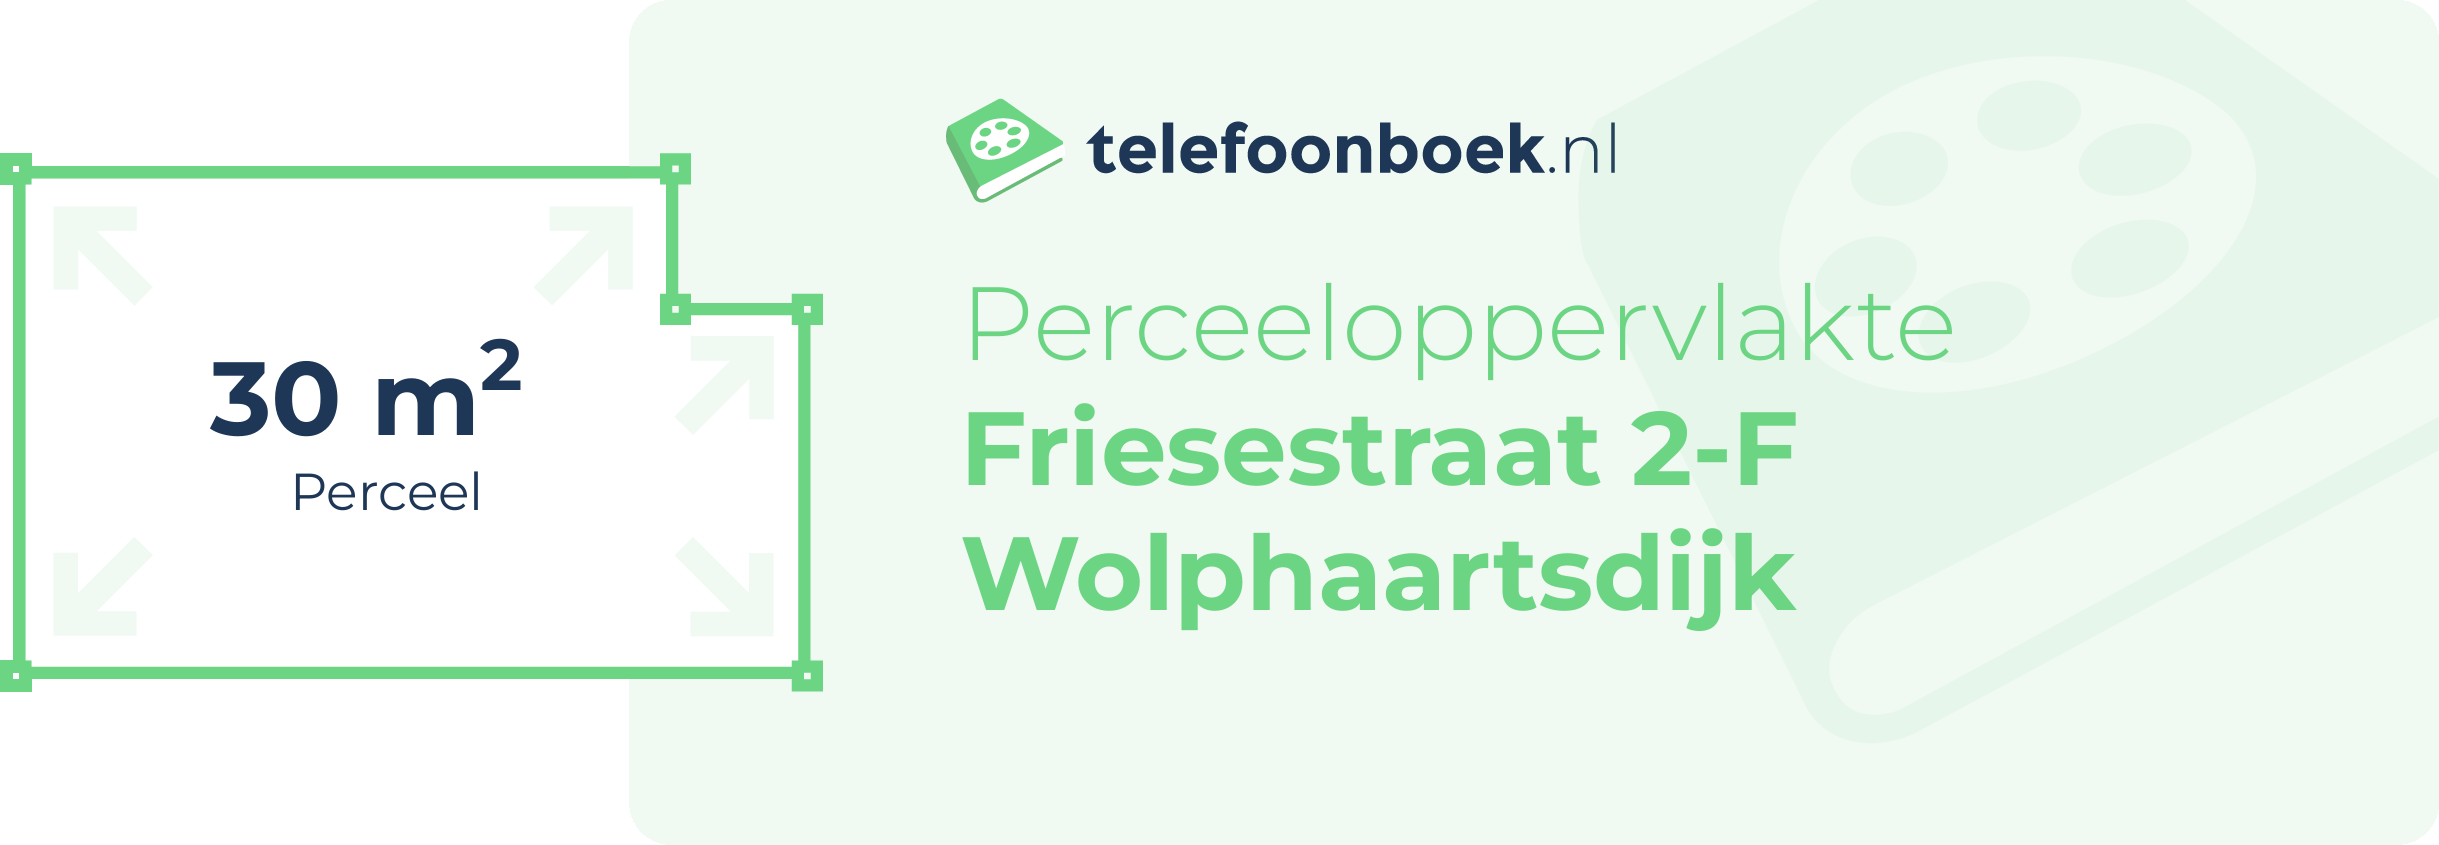 Perceeloppervlakte Friesestraat 2-F Wolphaartsdijk